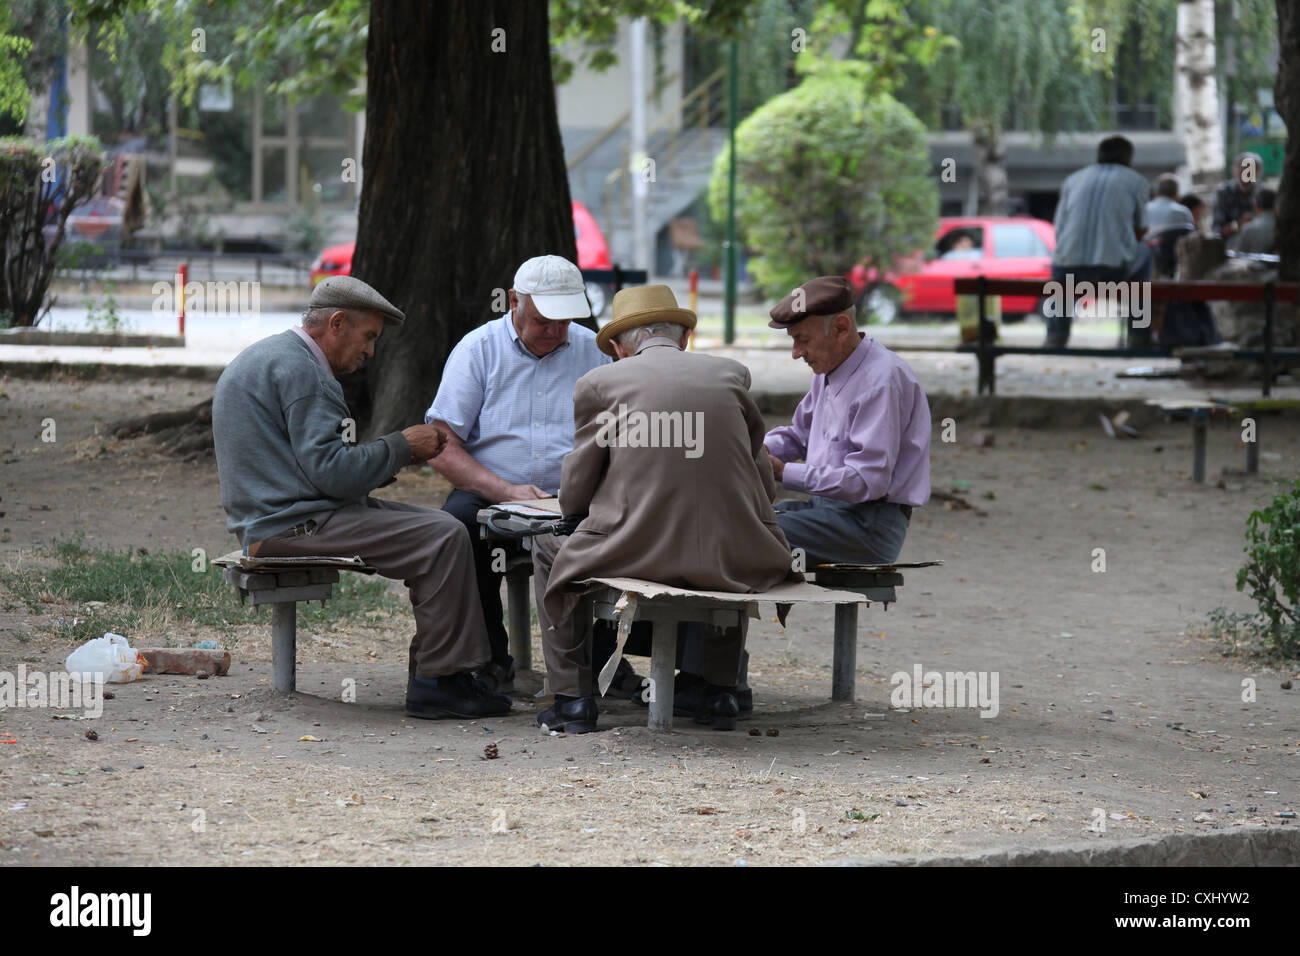 Les hommes jouent aux dominos dans le parc Banque D'Images